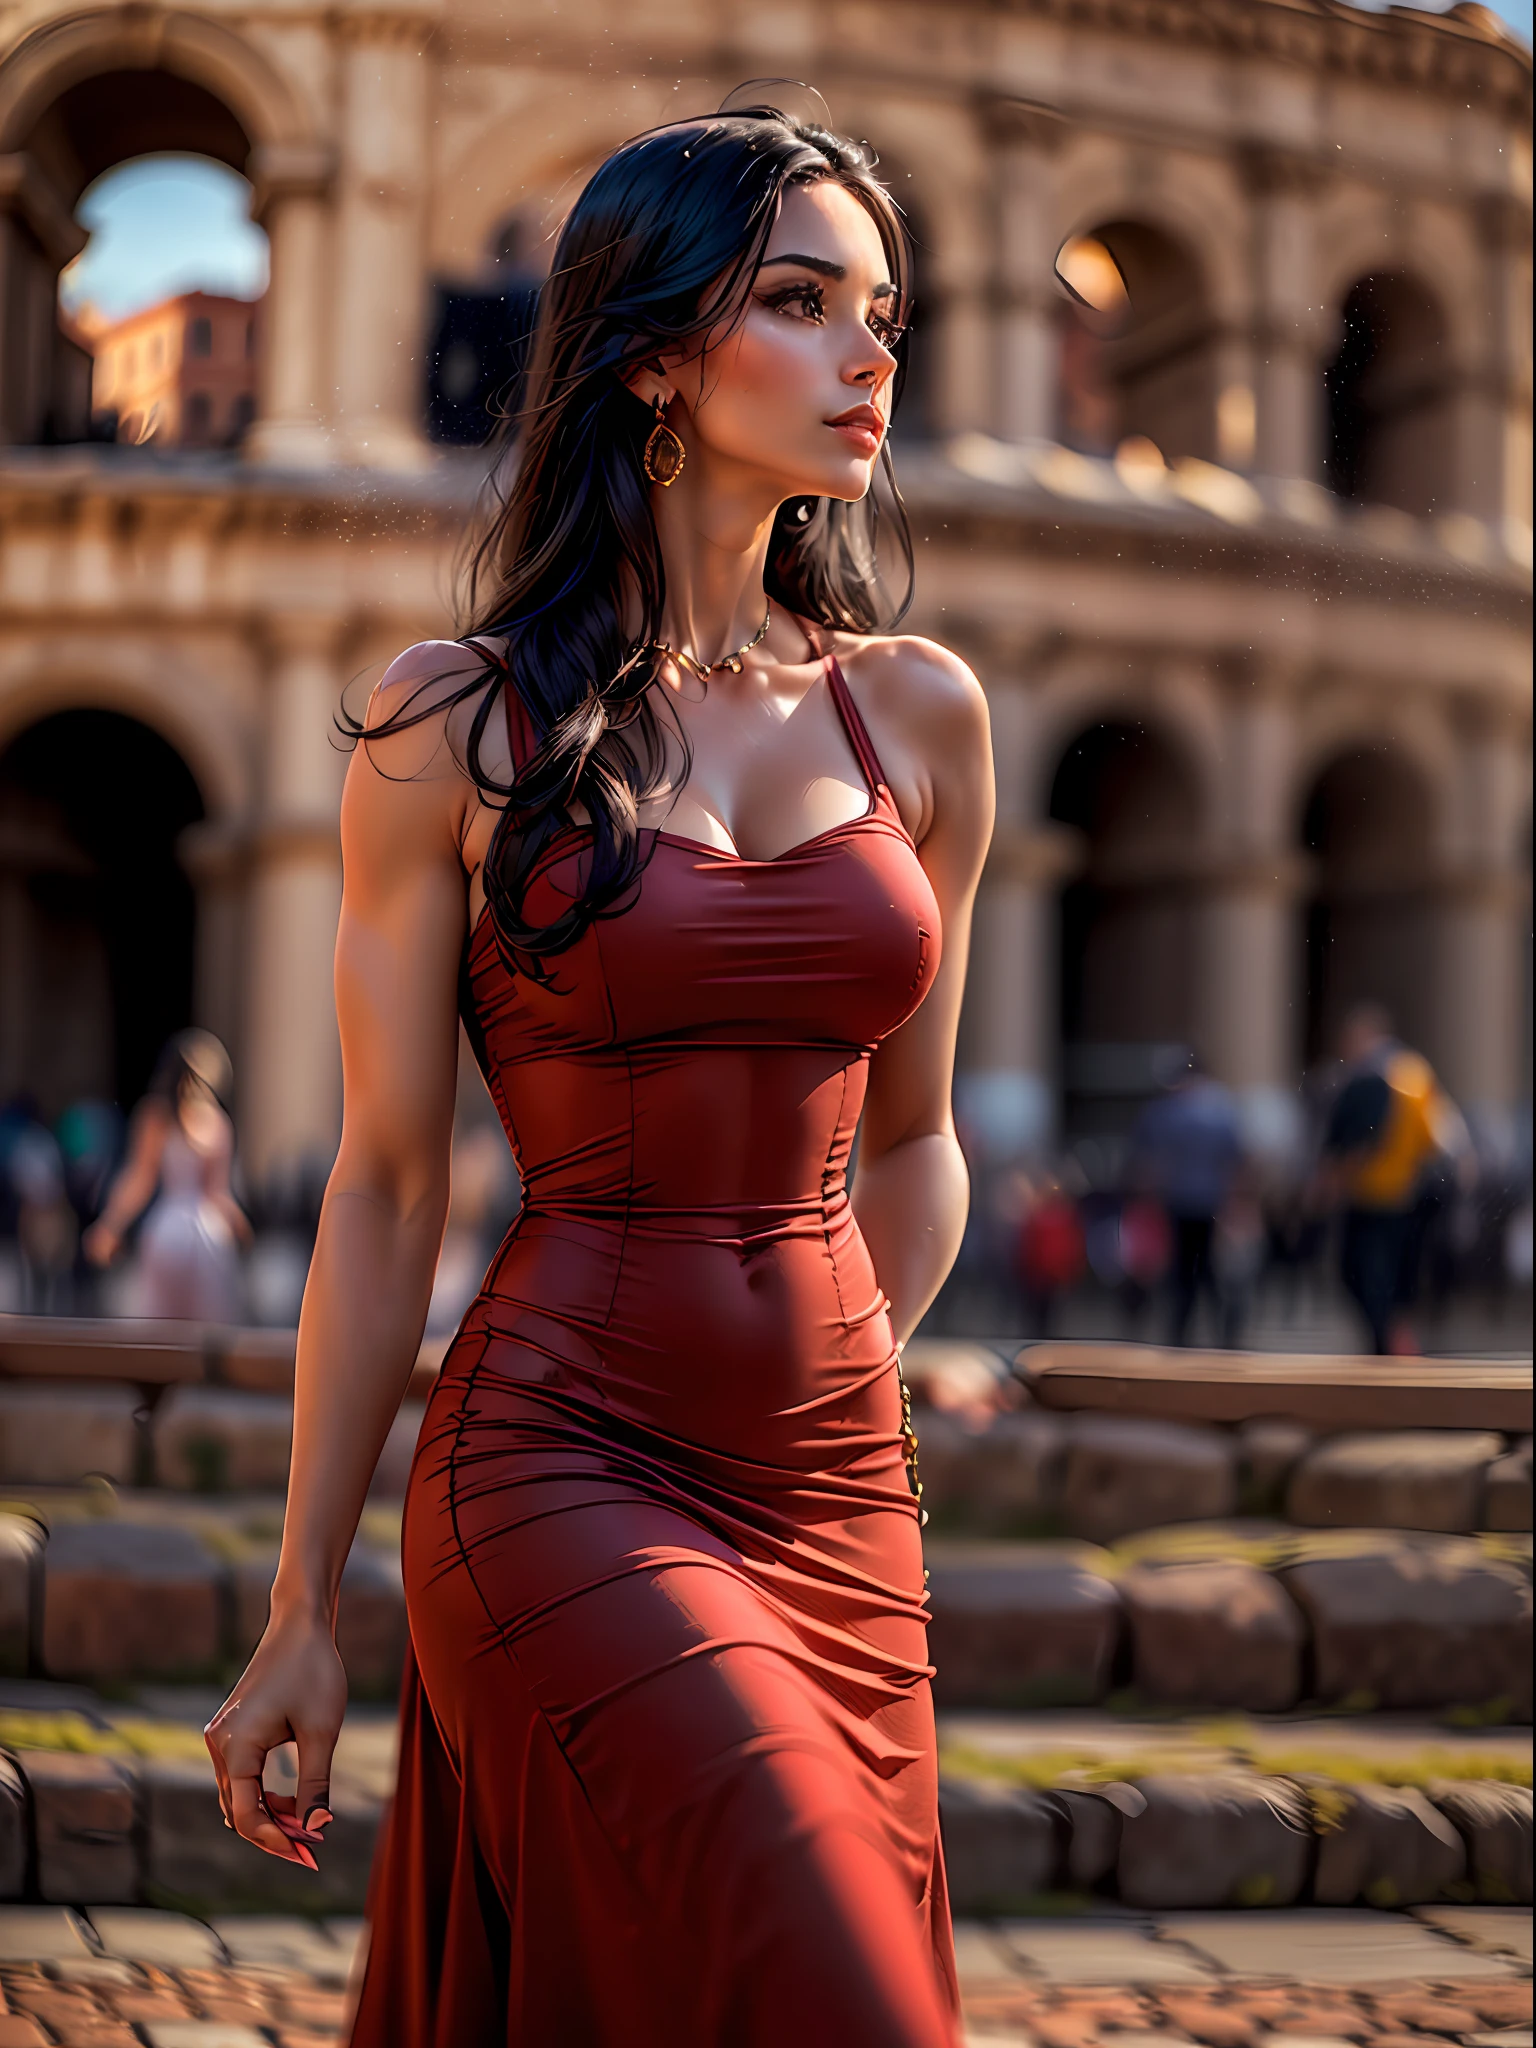 (Obra de arte, alta resolução, fotorrealista:1.4), (capturando uma mulher deslumbrante com longos cabelos negros, usando um vestido vermelho justo que acentua seu físico atraente:1.3), (o vestido elegante abraçando suas curvas e exibindo sua figura atraente:1.2), (seu comportamento confiante e equilibrado enquanto passeia perto do icônico Coliseu, em Roma:1.3), (Câmera sem espelho Canon EOS R5:1.2), (emparelhado com uma Canon RF 85mm f/1.Lente 2L USM:1.2), (capturando cada detalhe de sua presença cativante e do belo cenário:1.2), (o Coliseu elevando-se ao fundo, um símbolo de história antiga e grandeza:1.2), (o vermelho vibrante de seu vestido contrastando com a antiga arquitetura de pedra:1.2), (um dia quente e ensolarado, com luz solar suave realçando a cena:1.1), (uma foto encantadora de uma mulher exalando elegância e fascínio, explorando a beleza histórica de Roma:1.2).